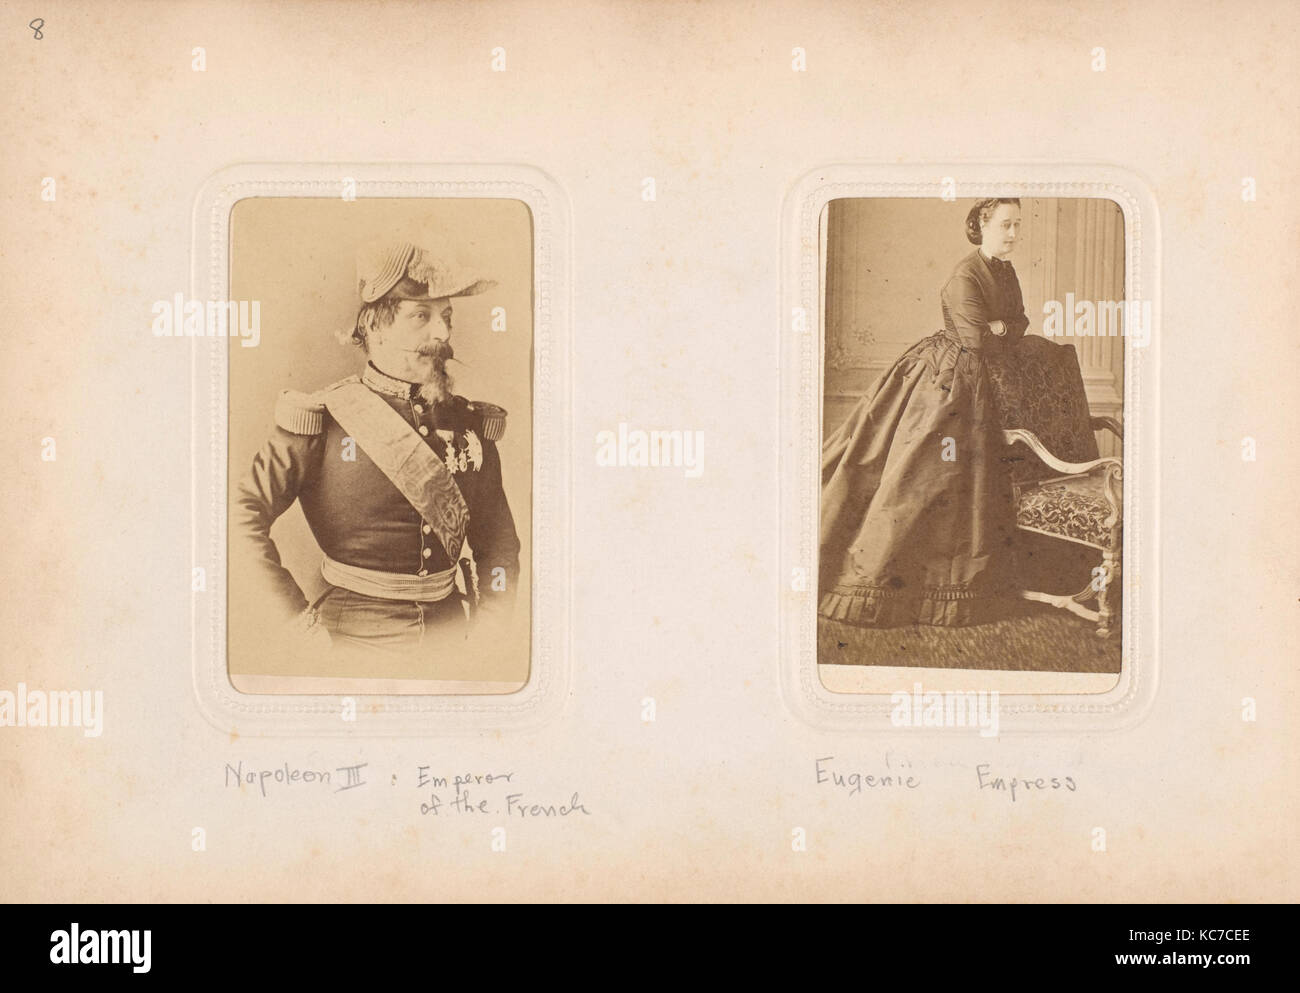 Carte-de-Visite Album von prominenten Persönlichkeiten, Mayer & Pierson, 1860 s - 70 s Stockfoto